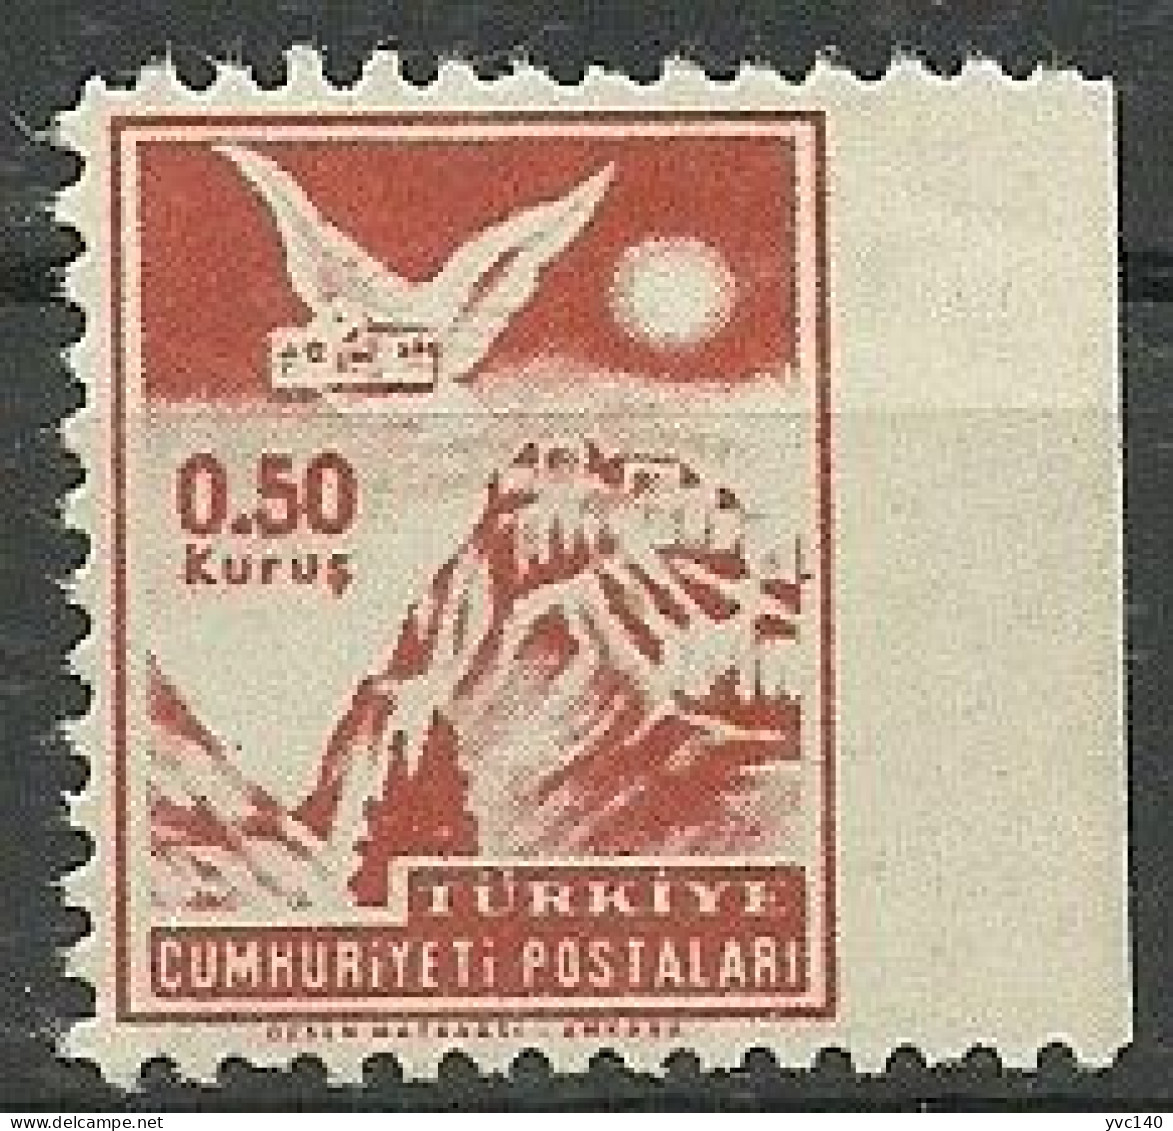 Turkey; 1954 "0.50 Kurus" Postage Stamp ERROR "Imperf. Edge" - Nuevos